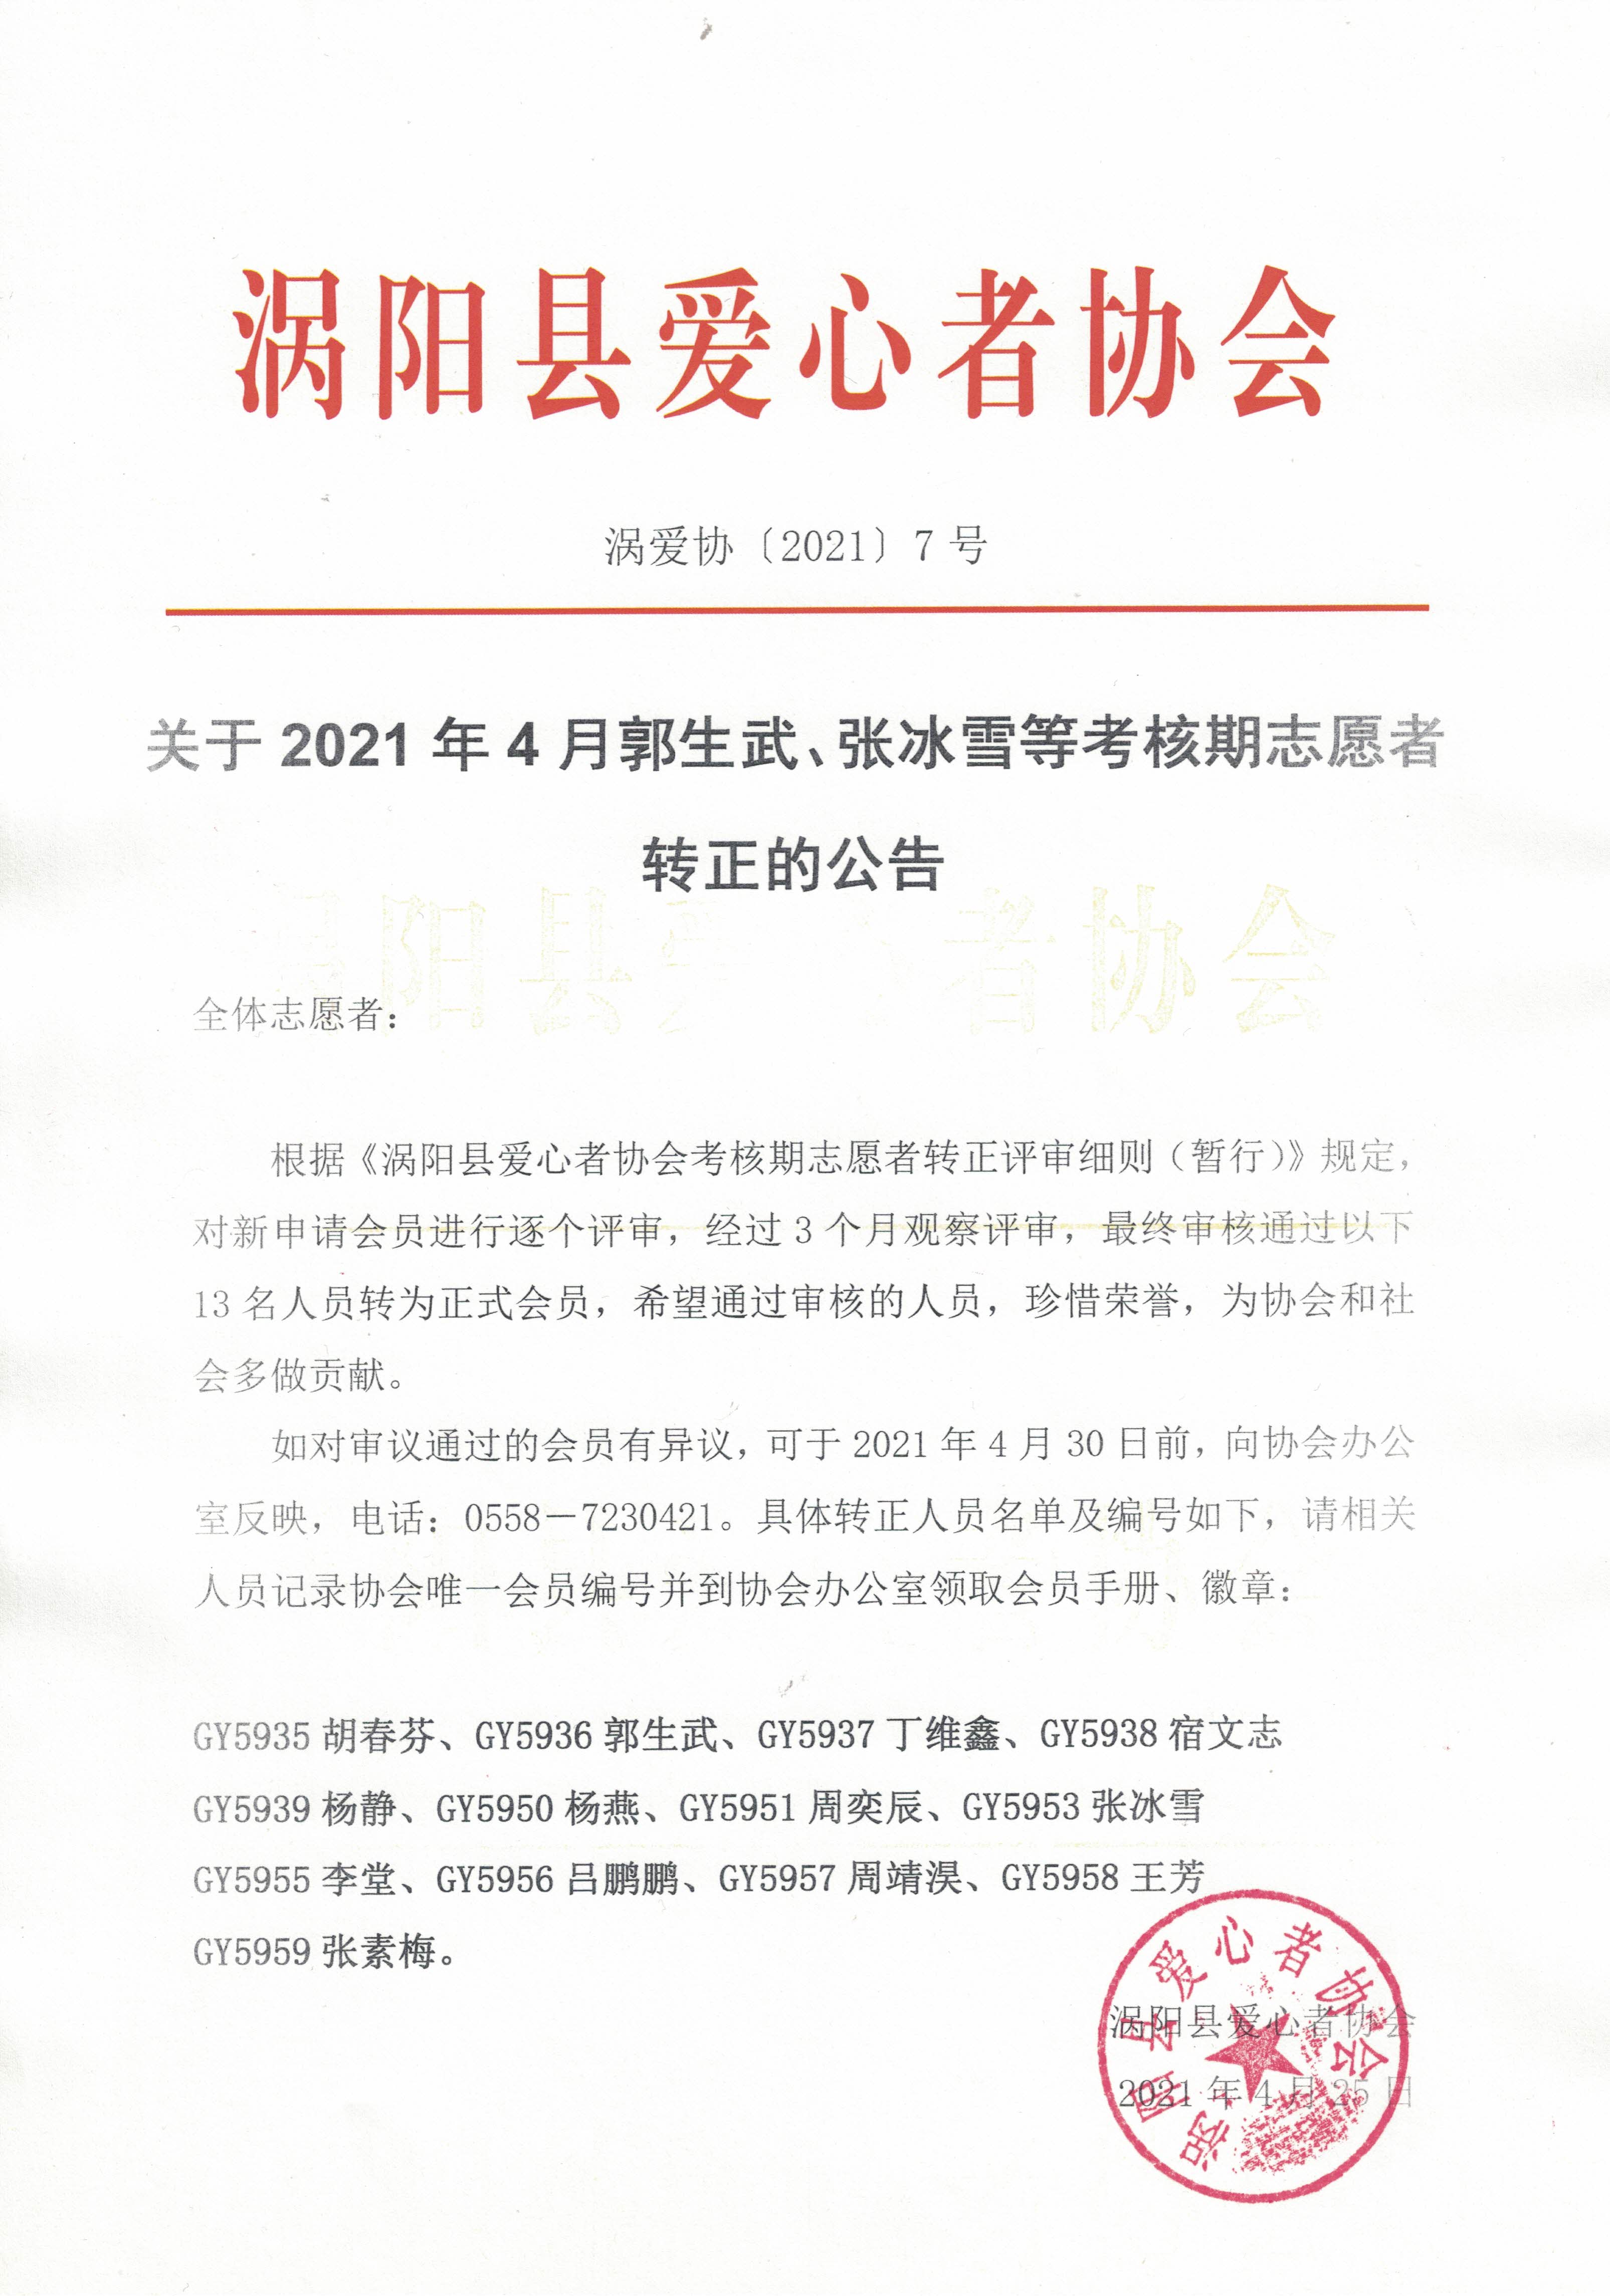 7关于2021年4月郭生武、张冰雪等考核期志愿者转正的公告2021.4.25.jpg